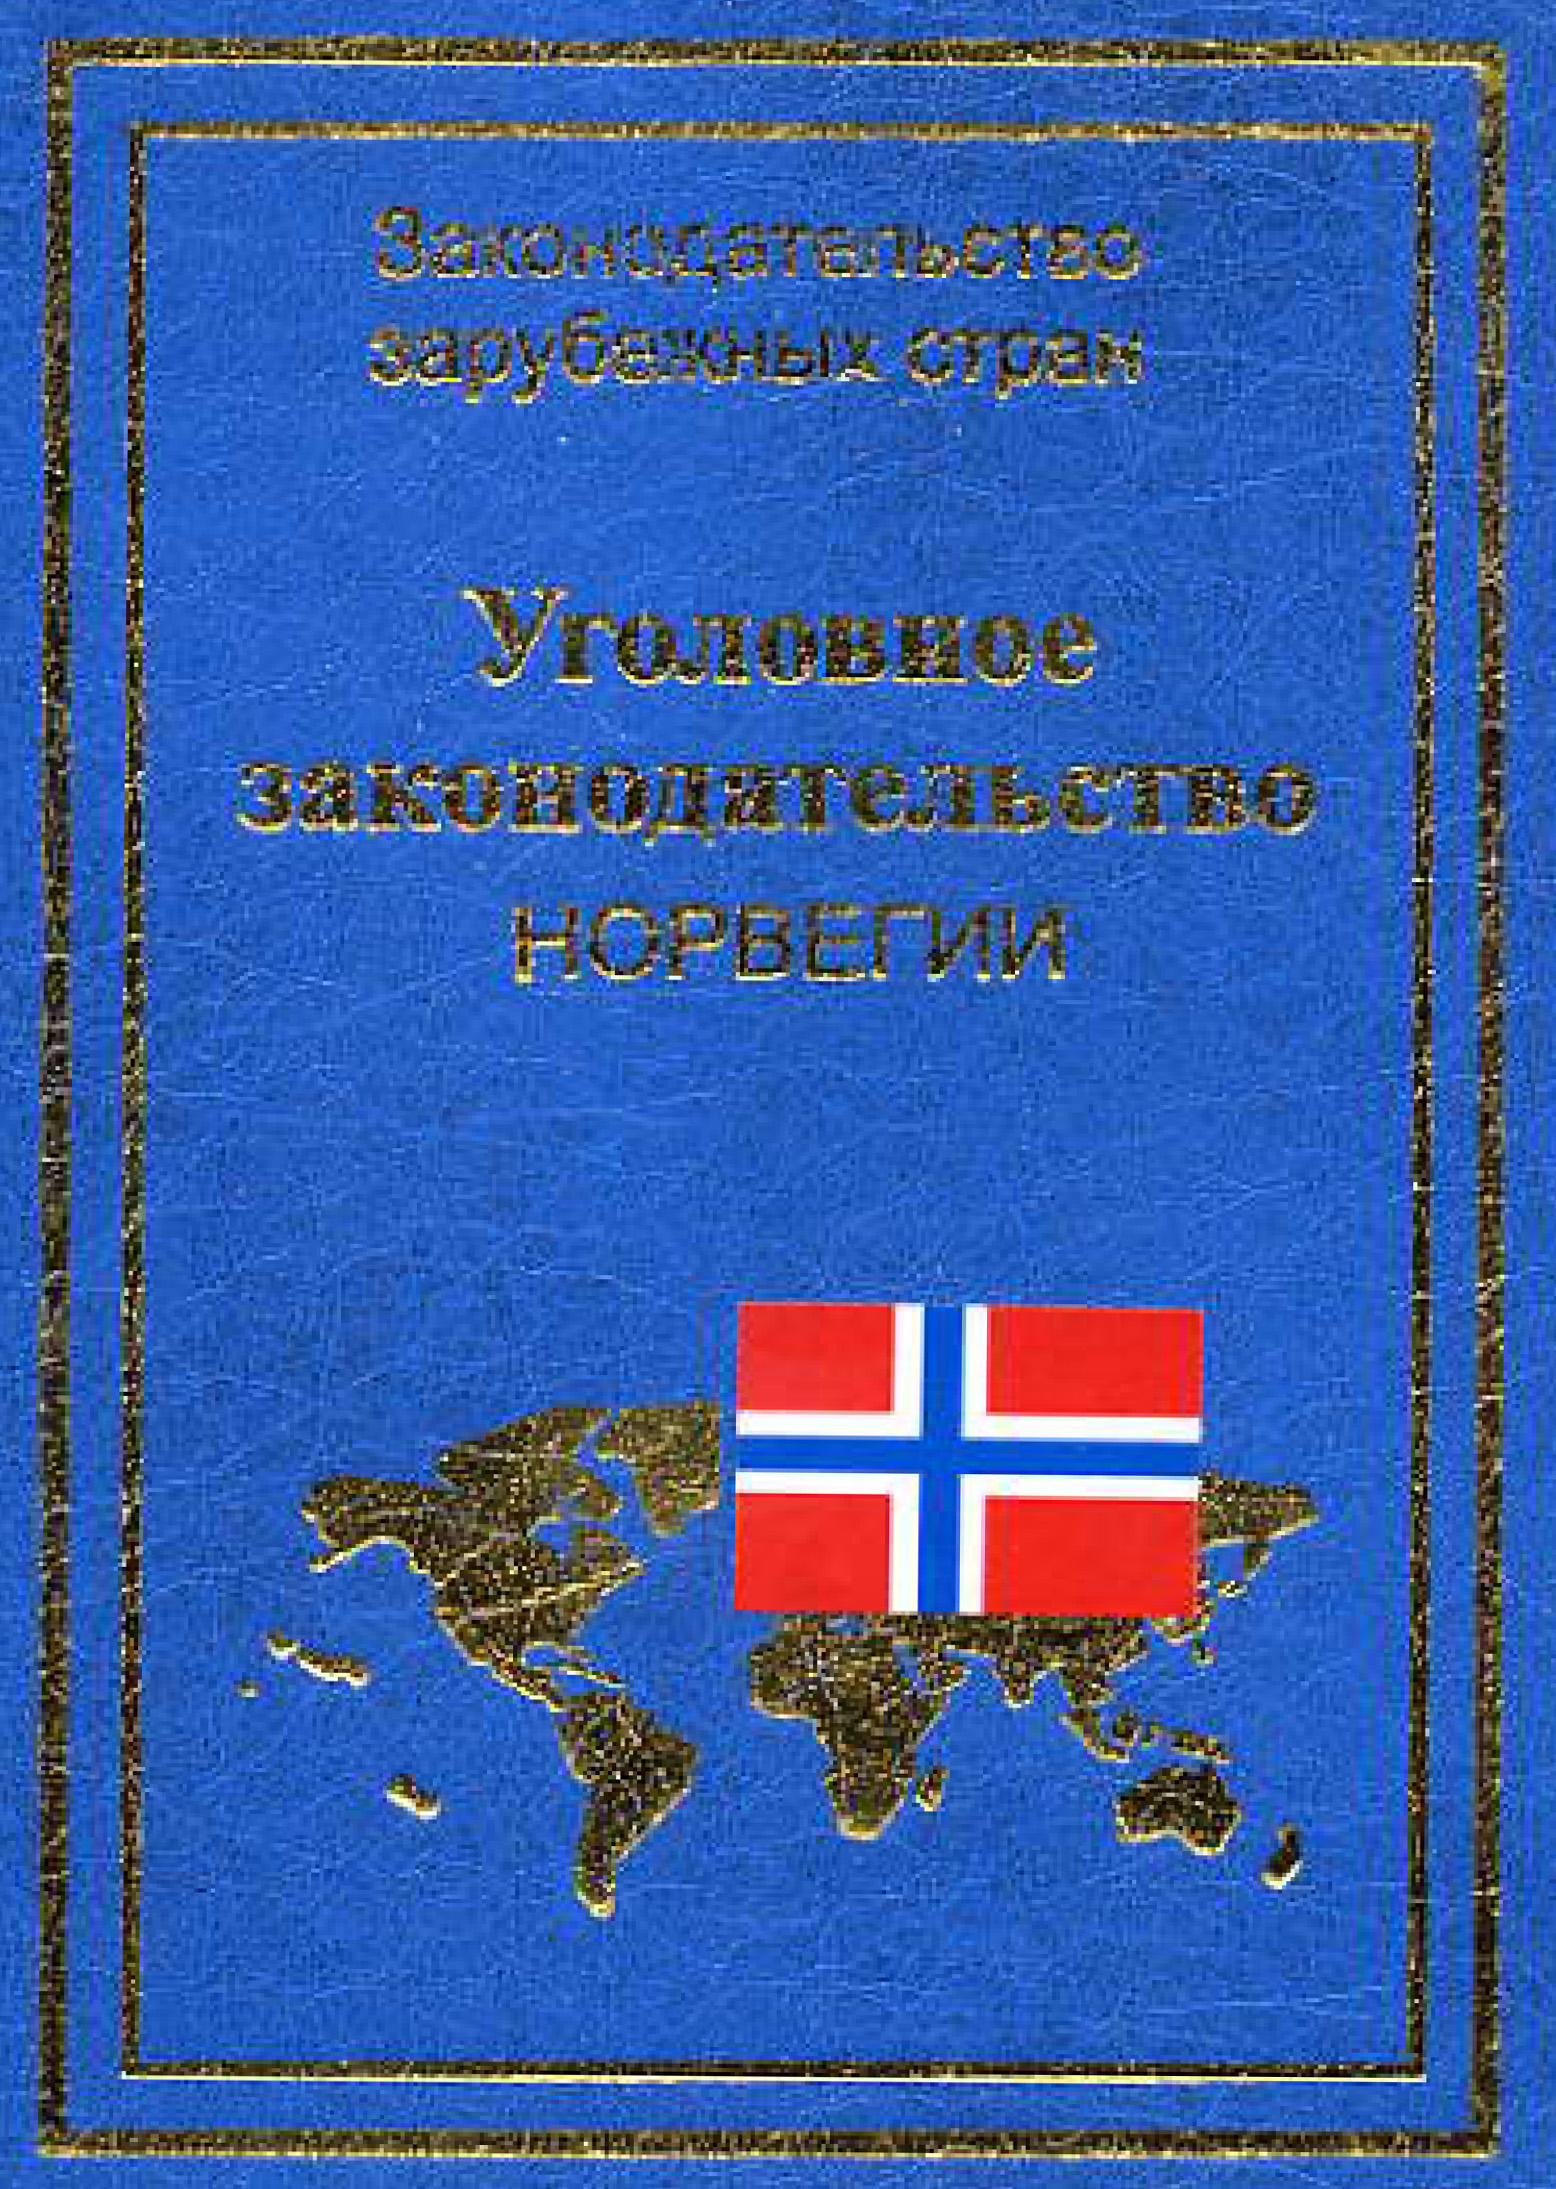 Книга Уголовное законодательство Норвегии из серии Законодательство зарубежных стран, созданная Юрий Голик, может относится к жанру Юриспруденция, право, Юриспруденция, право, Юриспруденция, право. Стоимость электронной книги Уголовное законодательство Норвегии с идентификатором 11132591 составляет 149.00 руб.